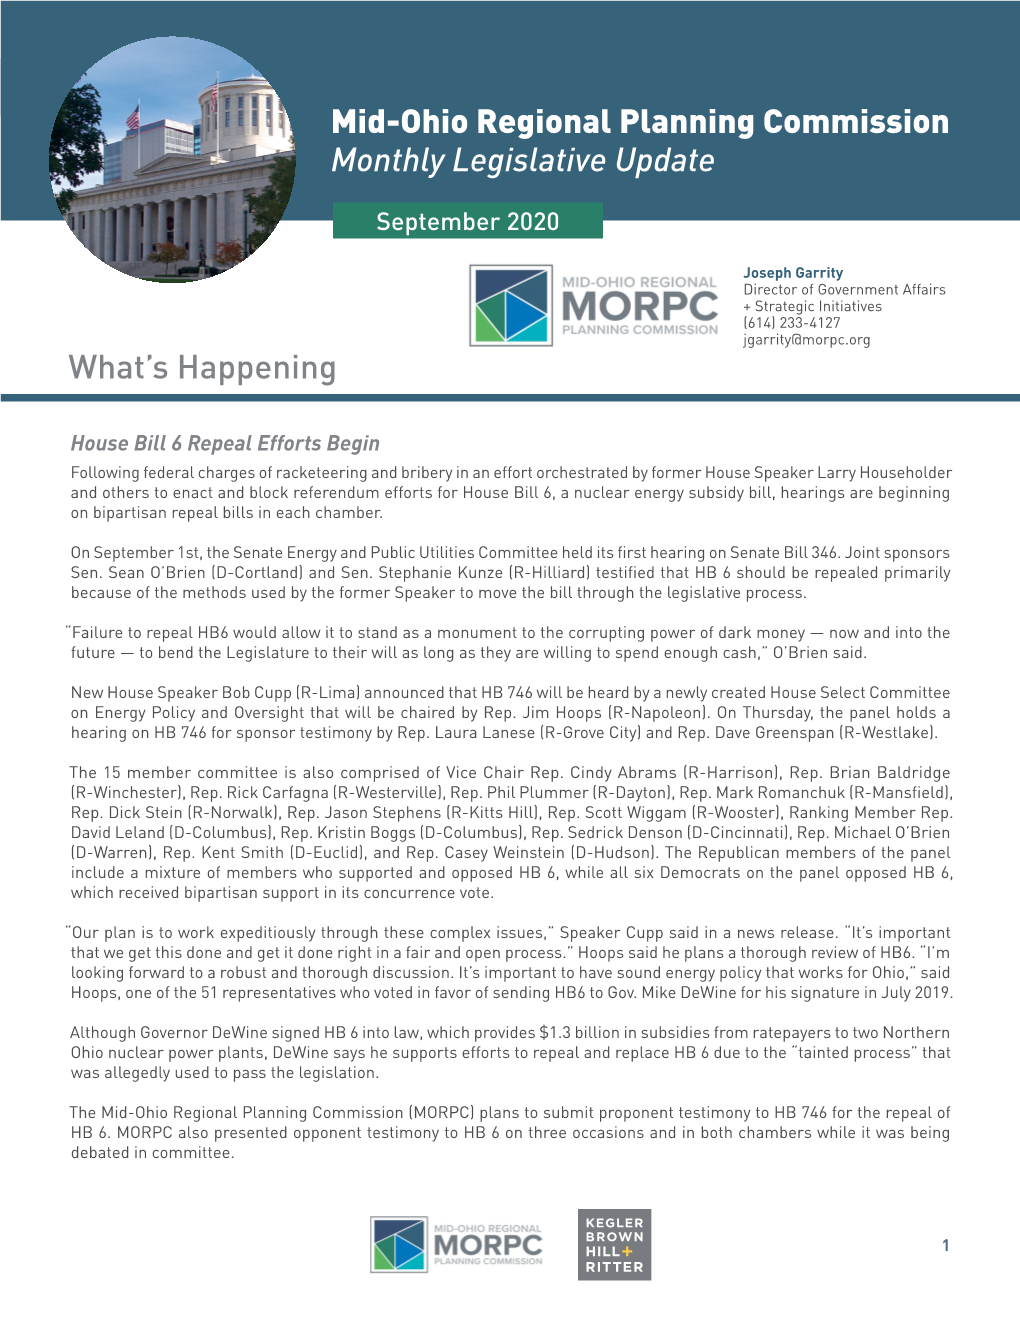 September 2020 Monthly Legislative Update